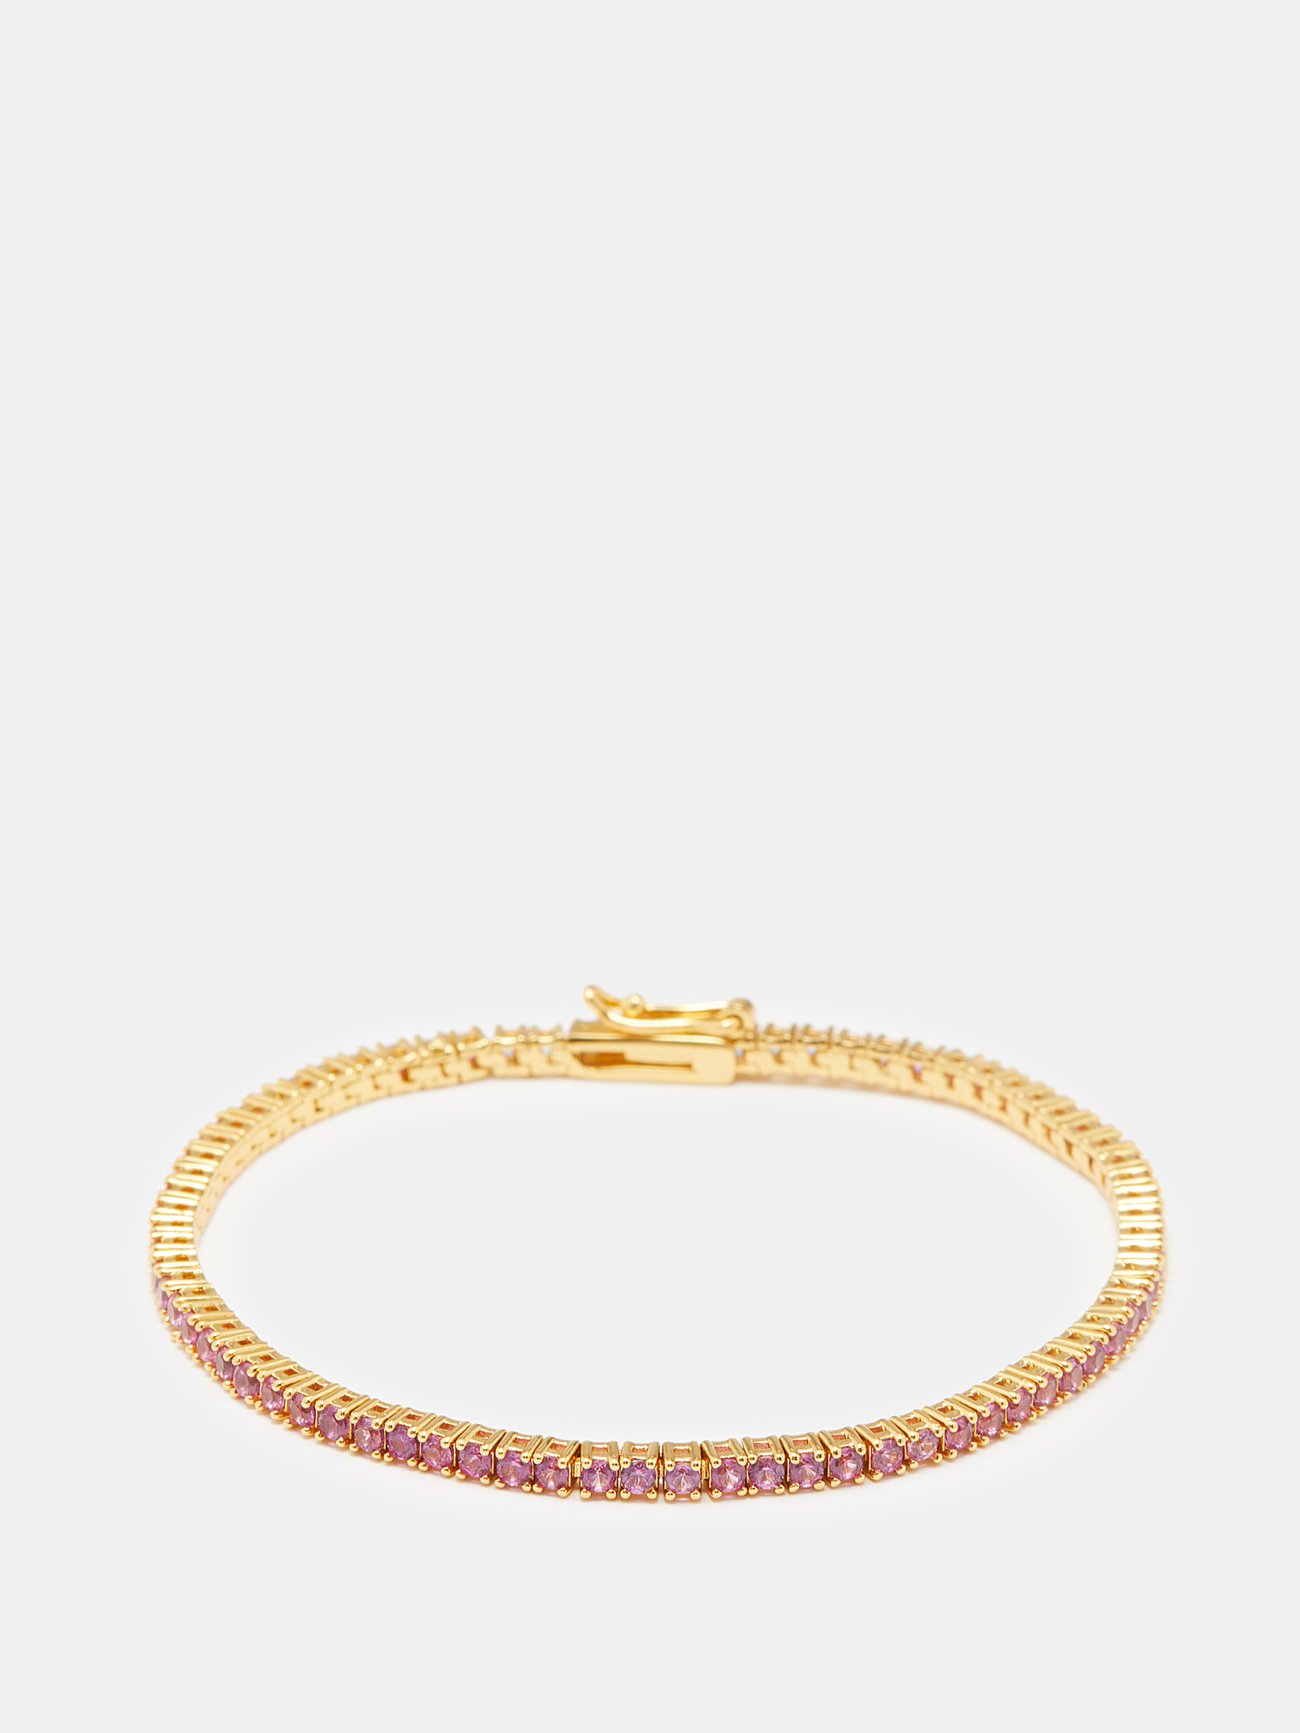 Roxanne Assoulin + Rally Cubic Zirconia & Gold-Plated Tennis Bracelet